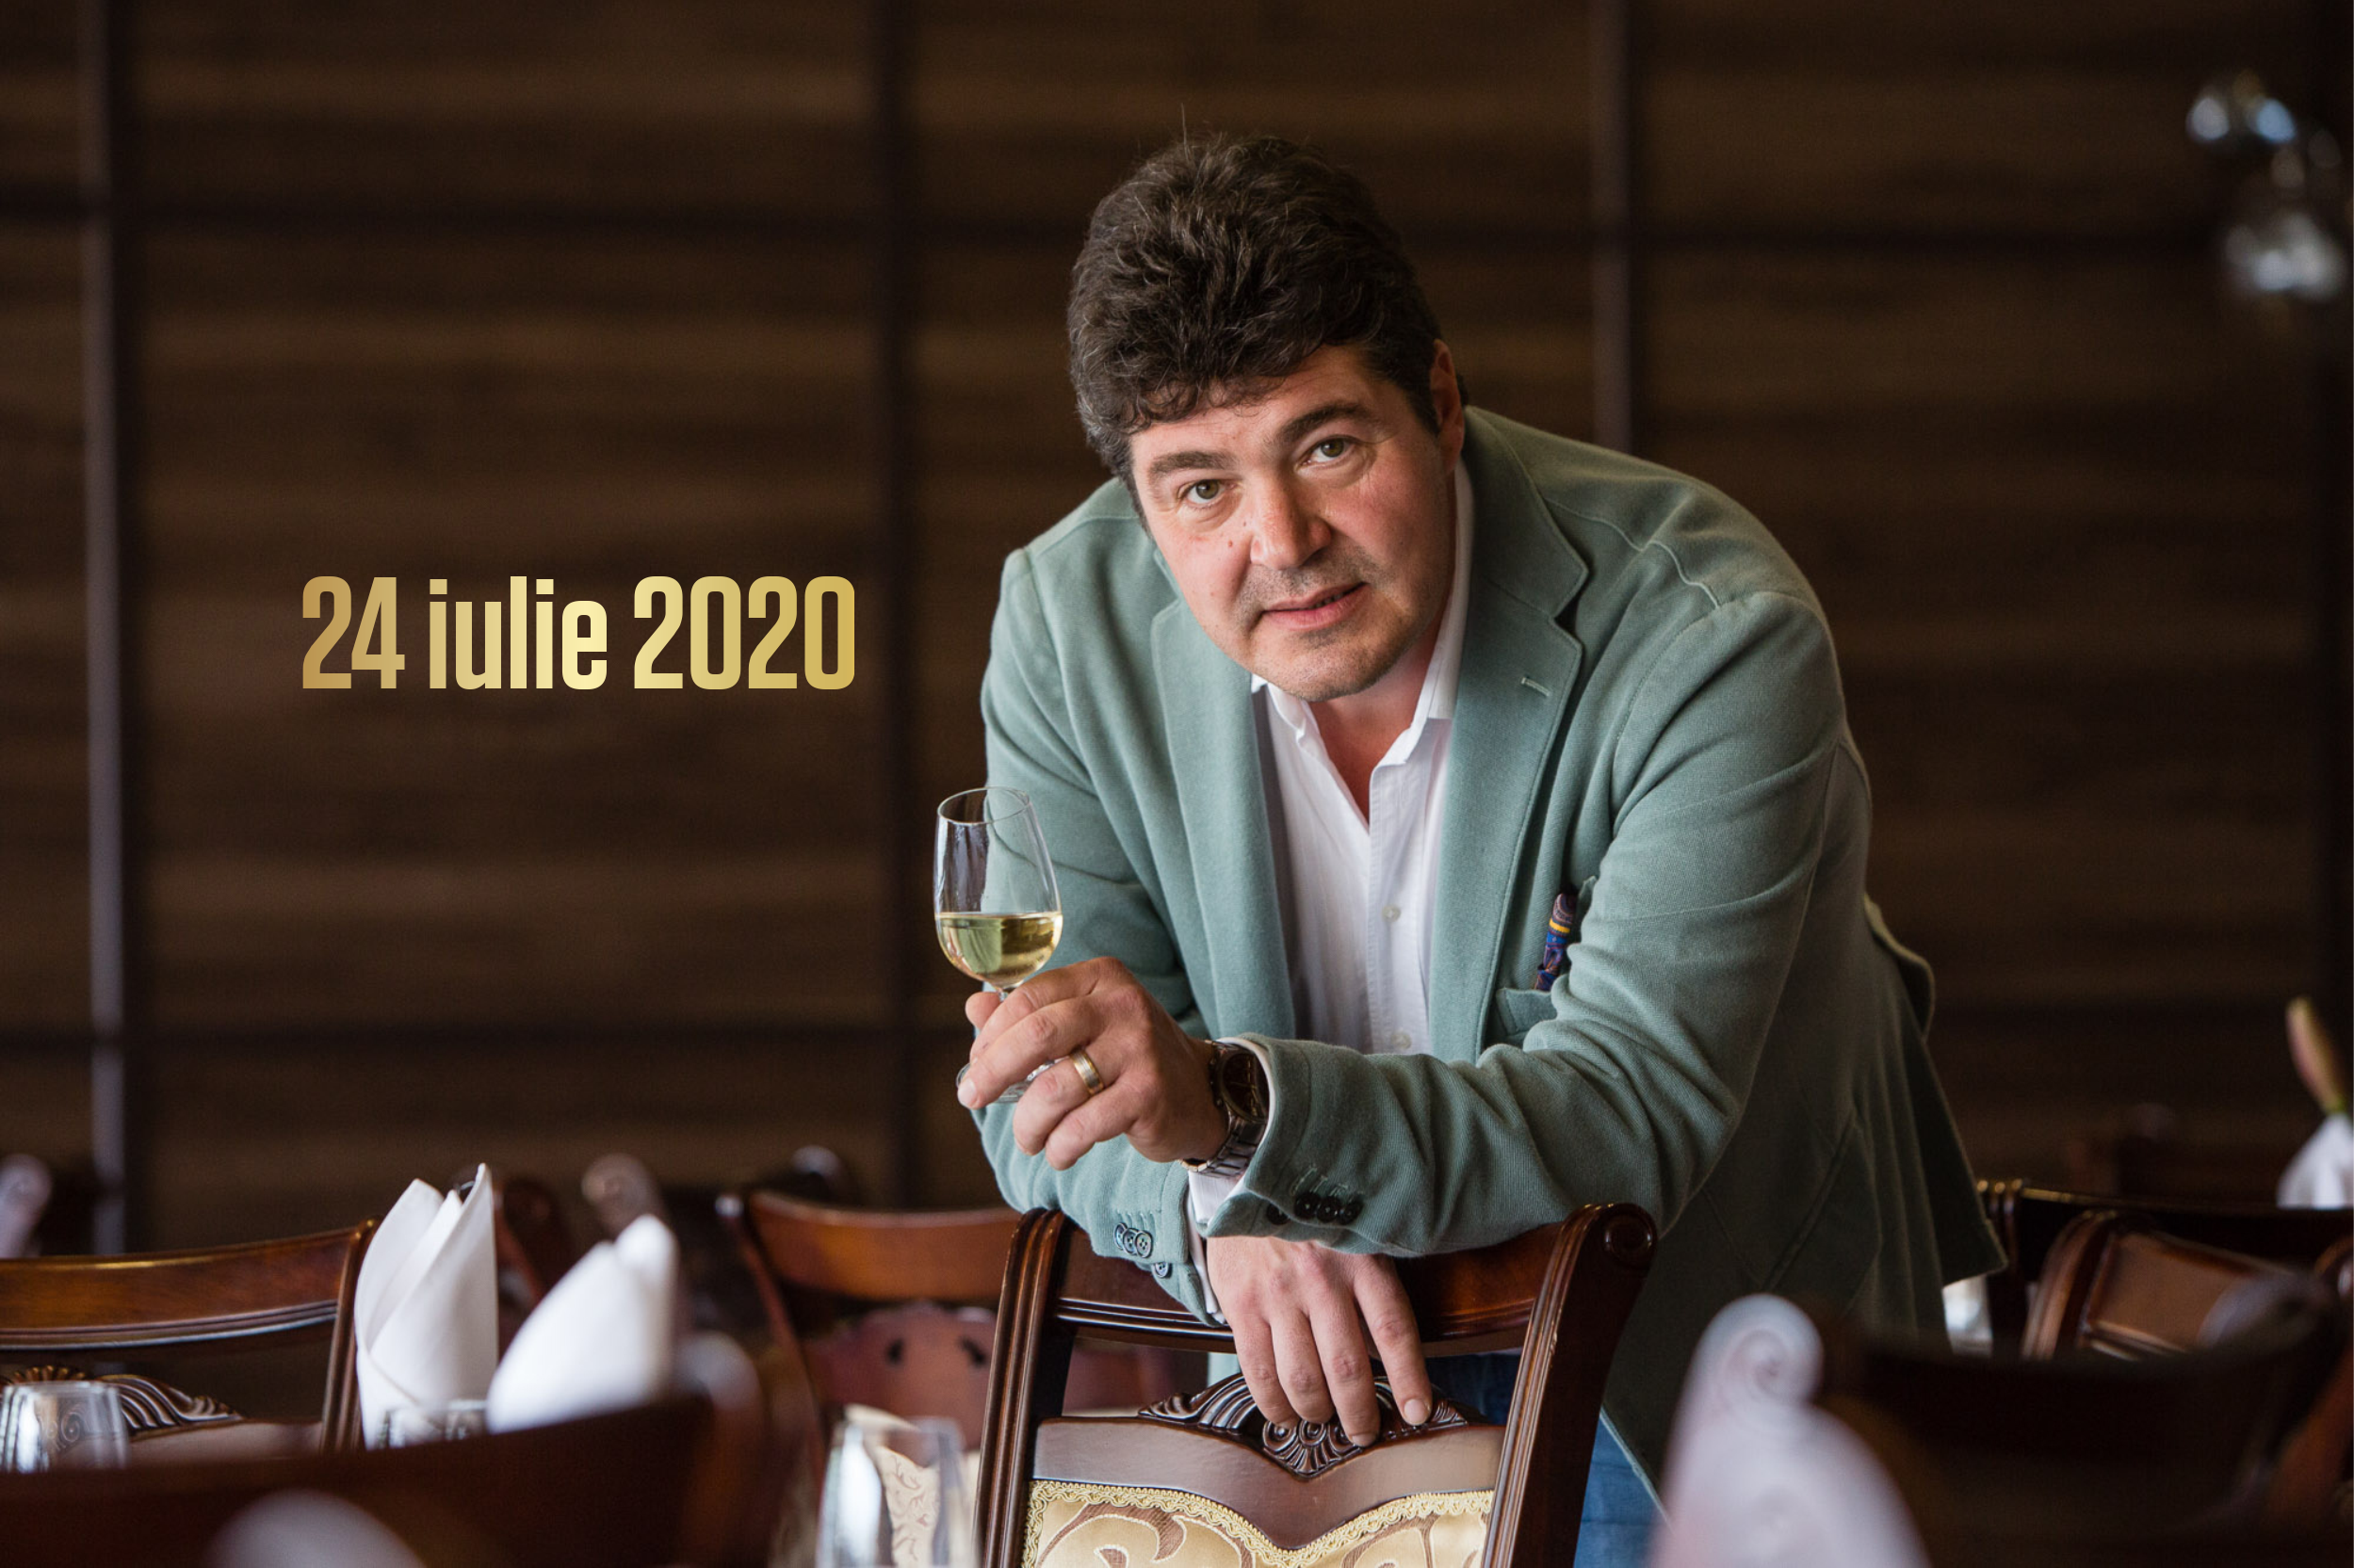 24 - 26 iulie 2020 – Ce vinuri bem în acest weekend, 3 vinuri pentru 3 seri. Recomandările lui Cătălin Păduraru, Preşedintele VINARIUM International Wine Contest